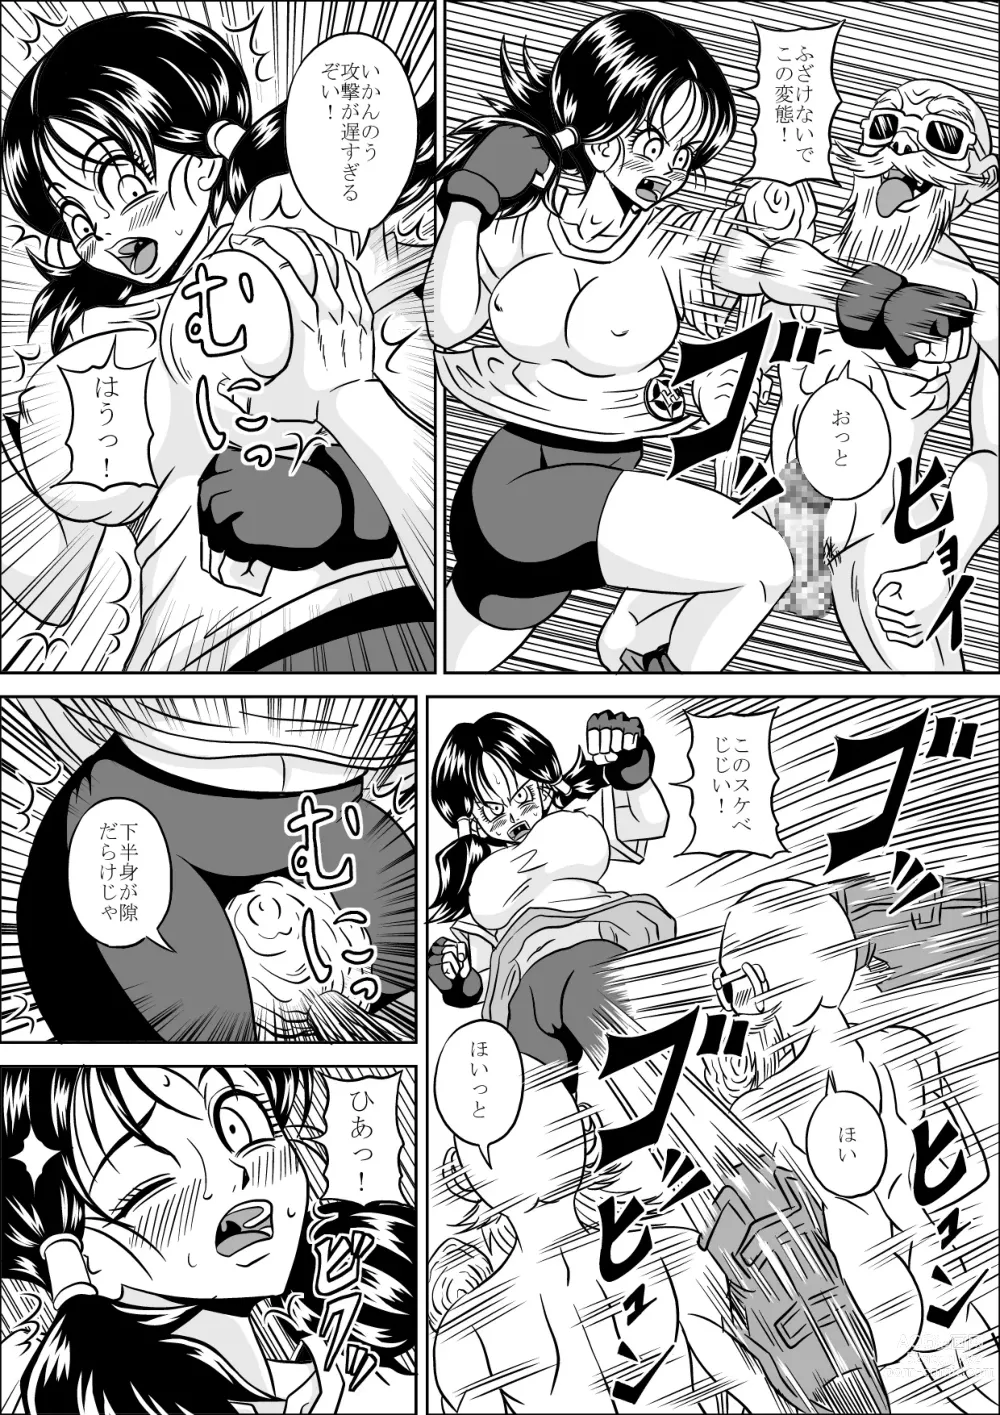 Page 8 of doujinshi Kame Sennin no Yabou II